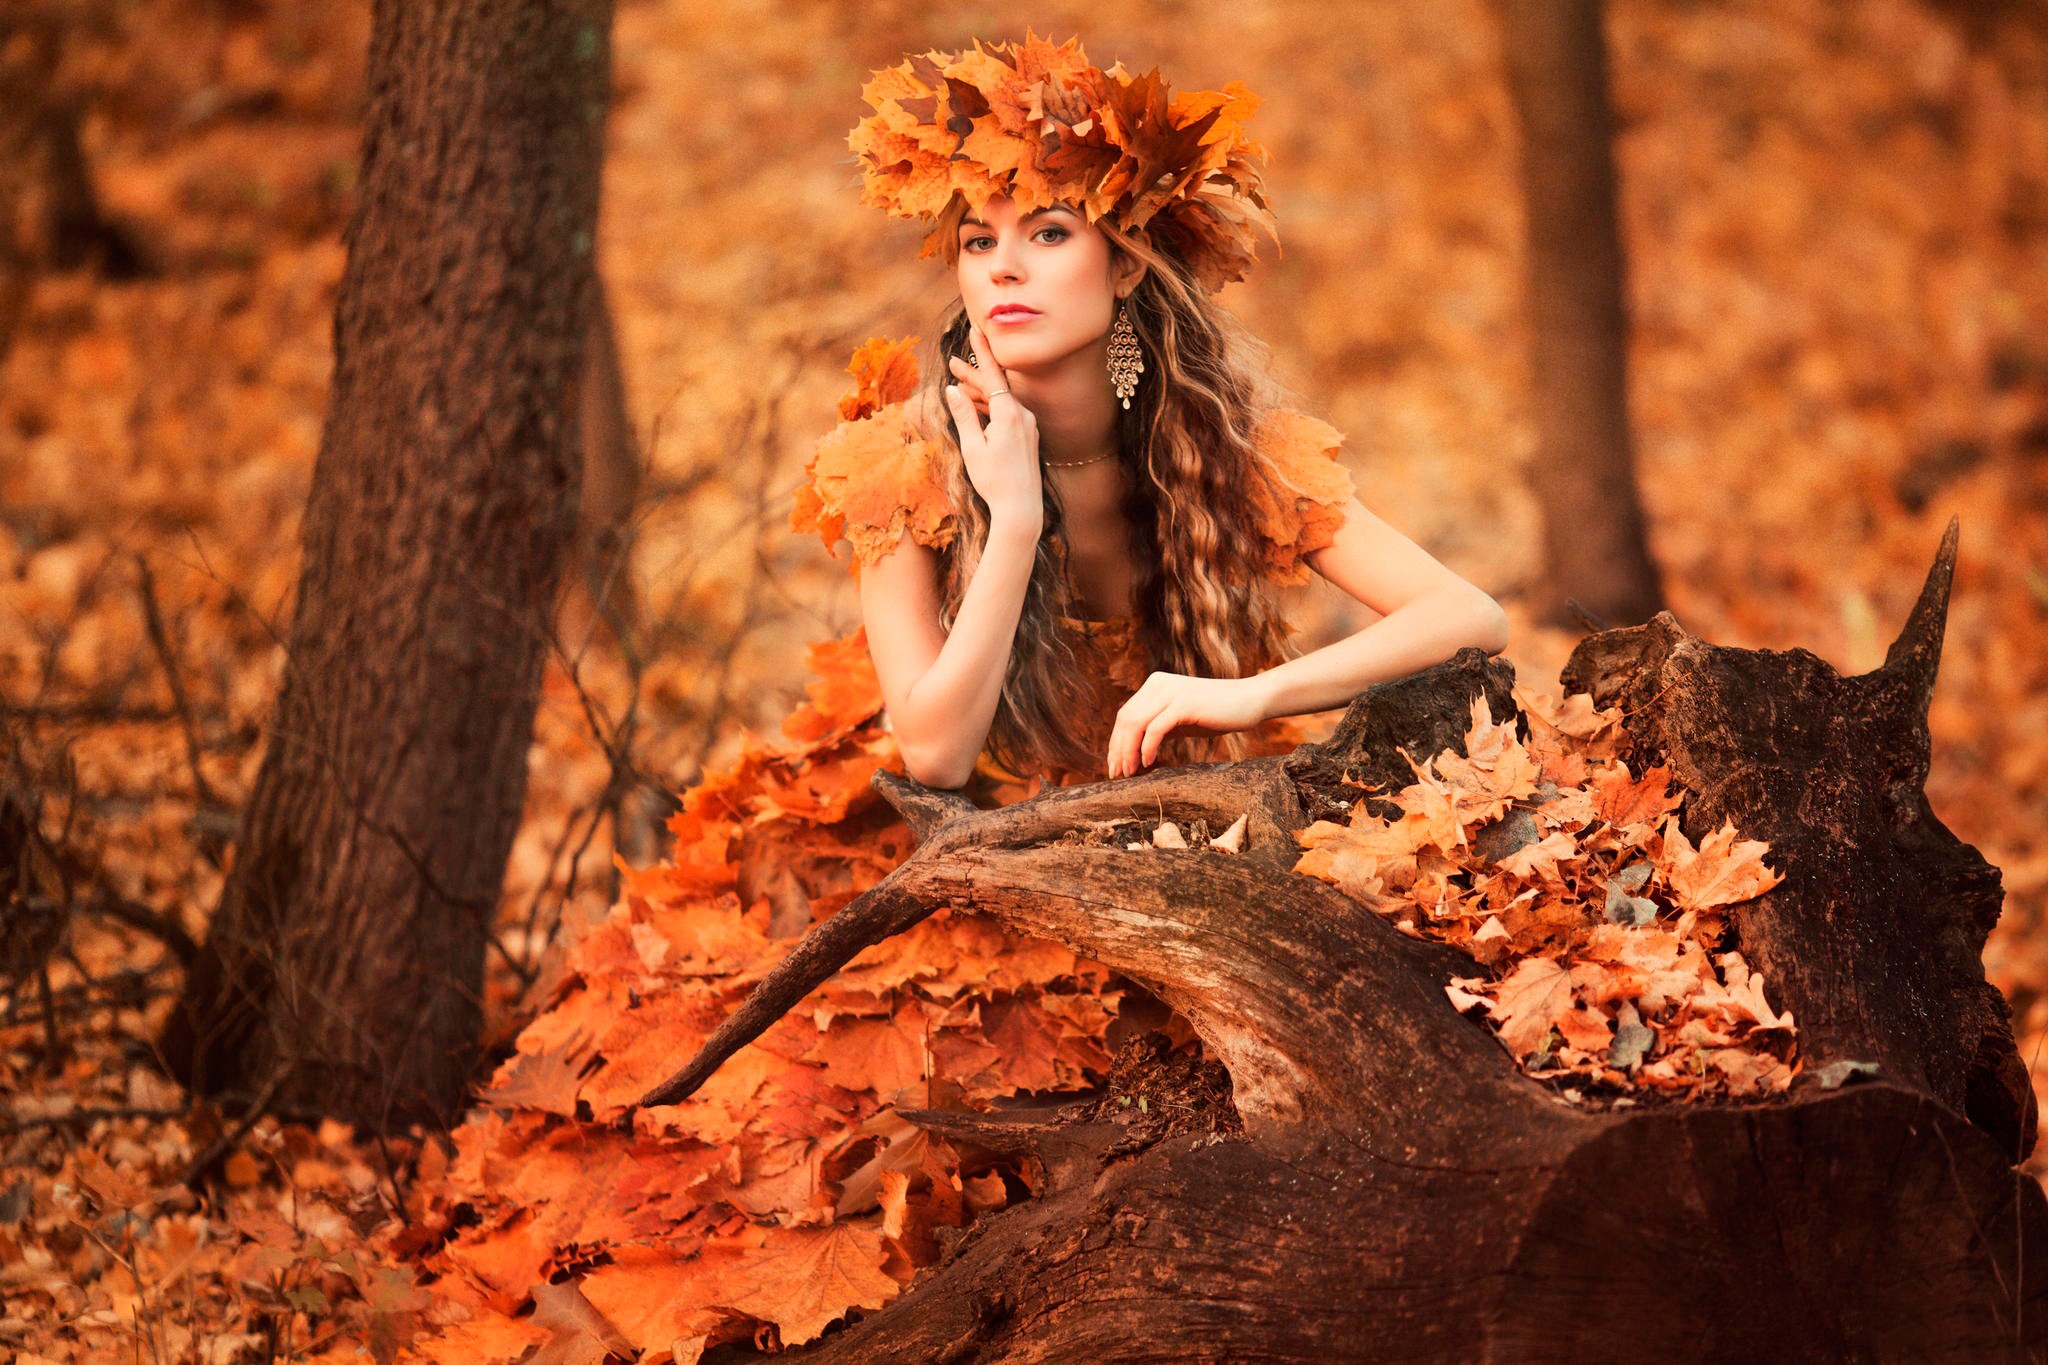 Women Model Brunette Long Hair Women Outdoors Trees Fall Leaves Wavy